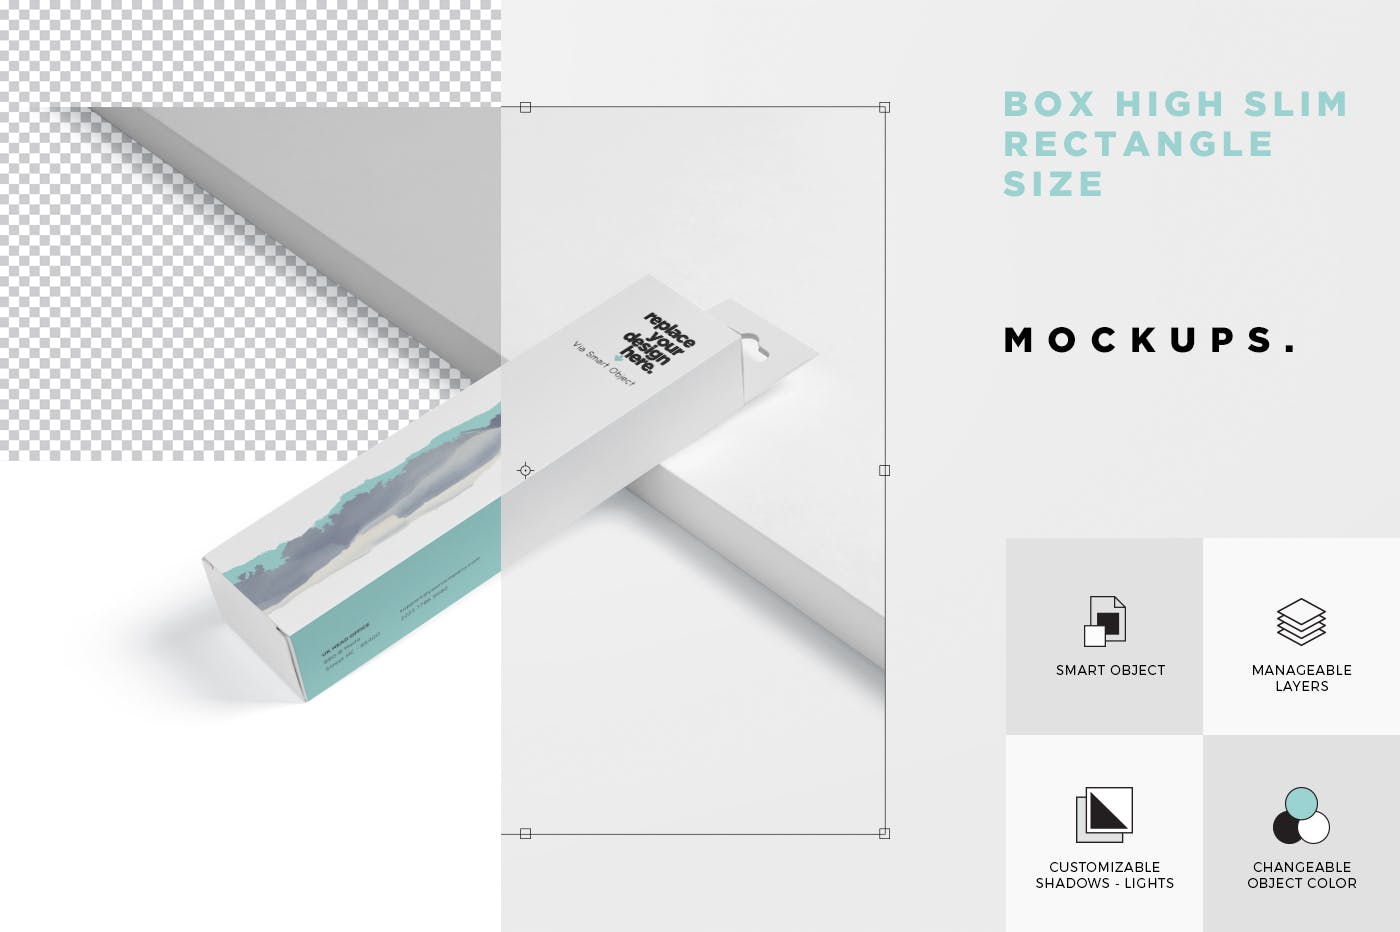 超薄矩形长条包装盒外观设计效果图普贤居精选 Box Mockup PSDs – High Slim Rectangle Size Hanger插图(6)